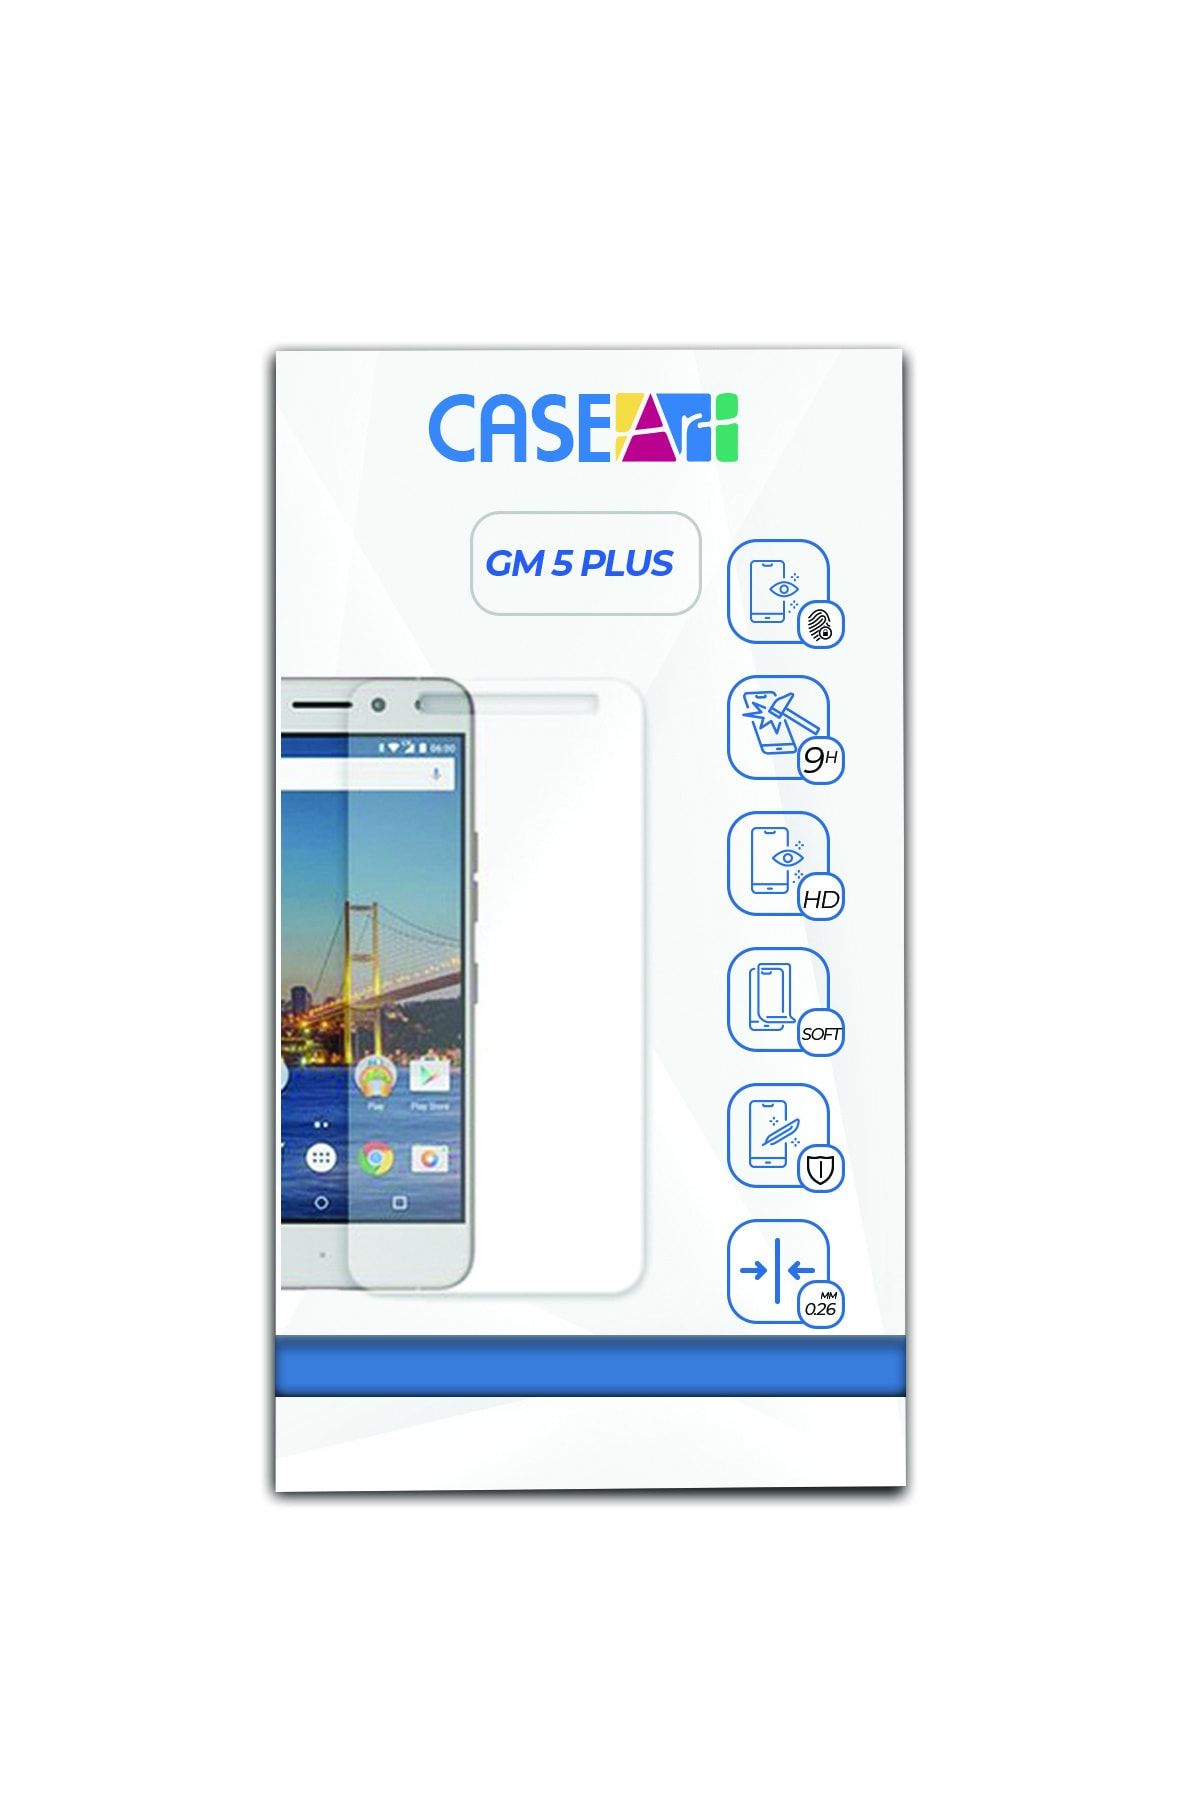 CaseArt General Mobile Gm5 Plus Temperli Ekran Koruyucu Kırılmaz Cam